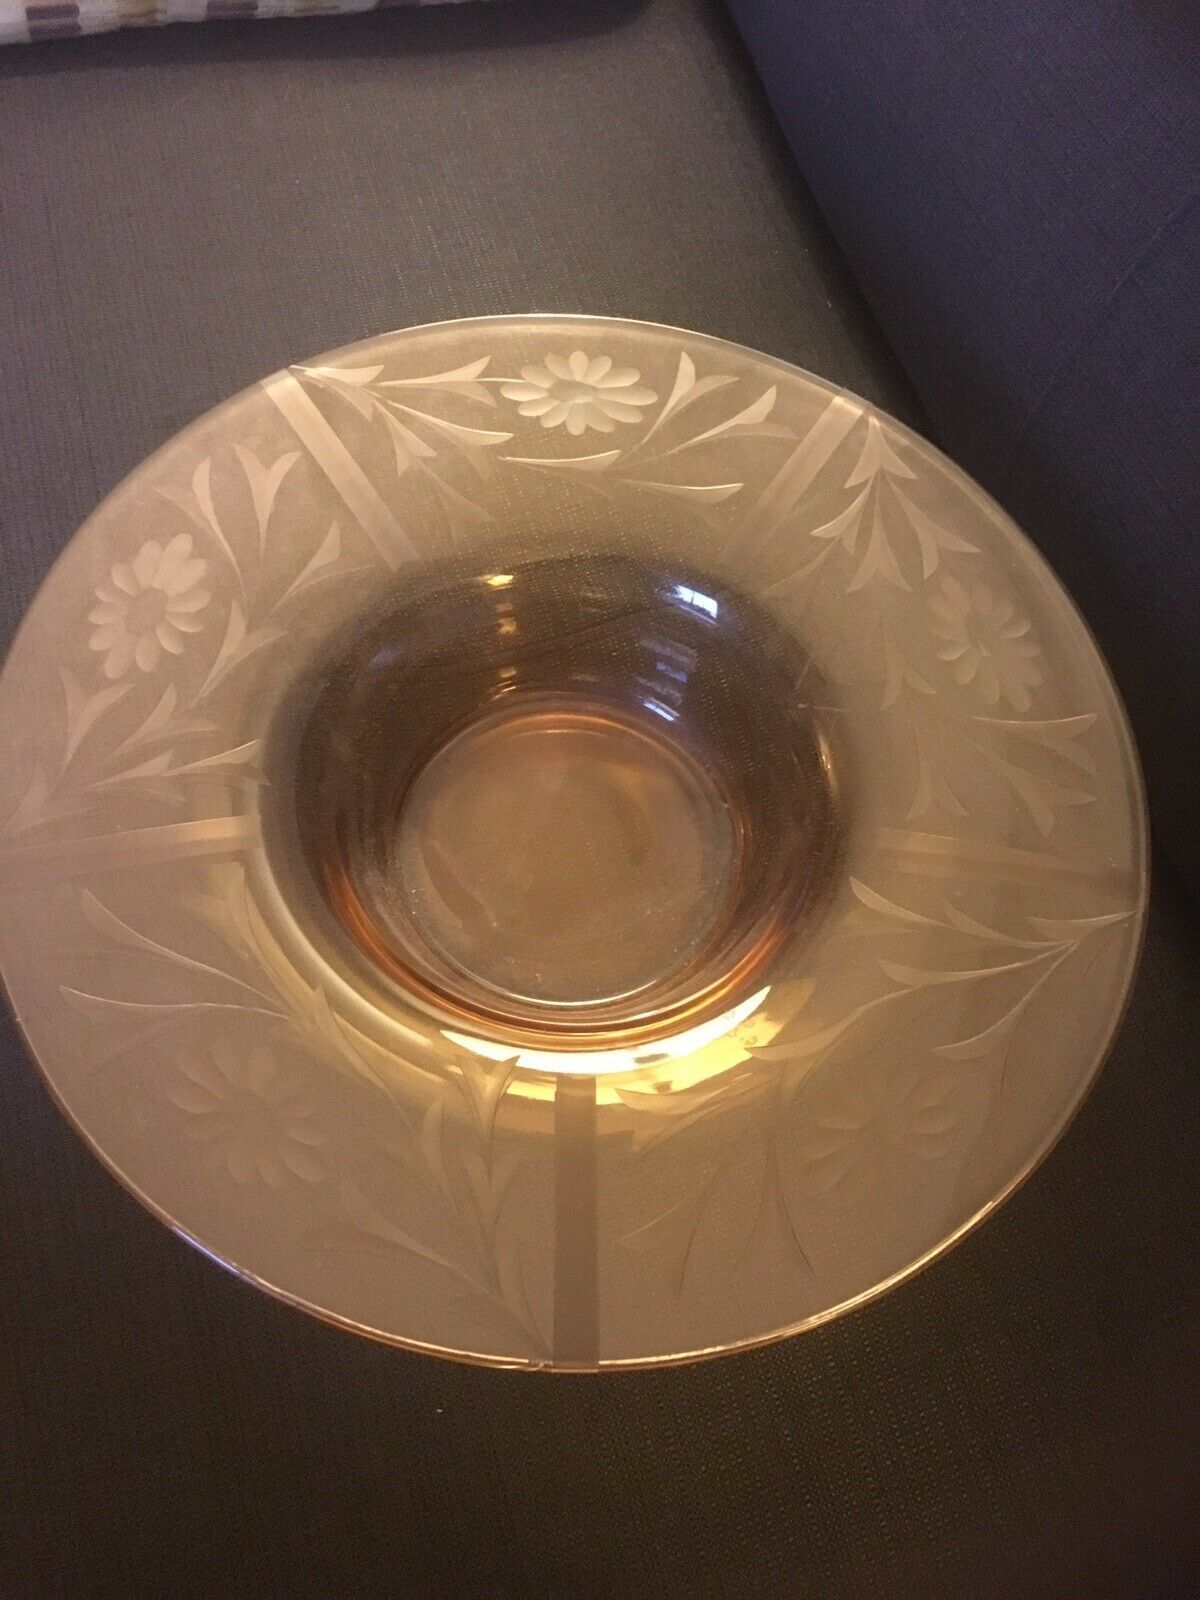 Primary image for Large Vintage Pink Depression Glass Pedestal Bowl or Compote